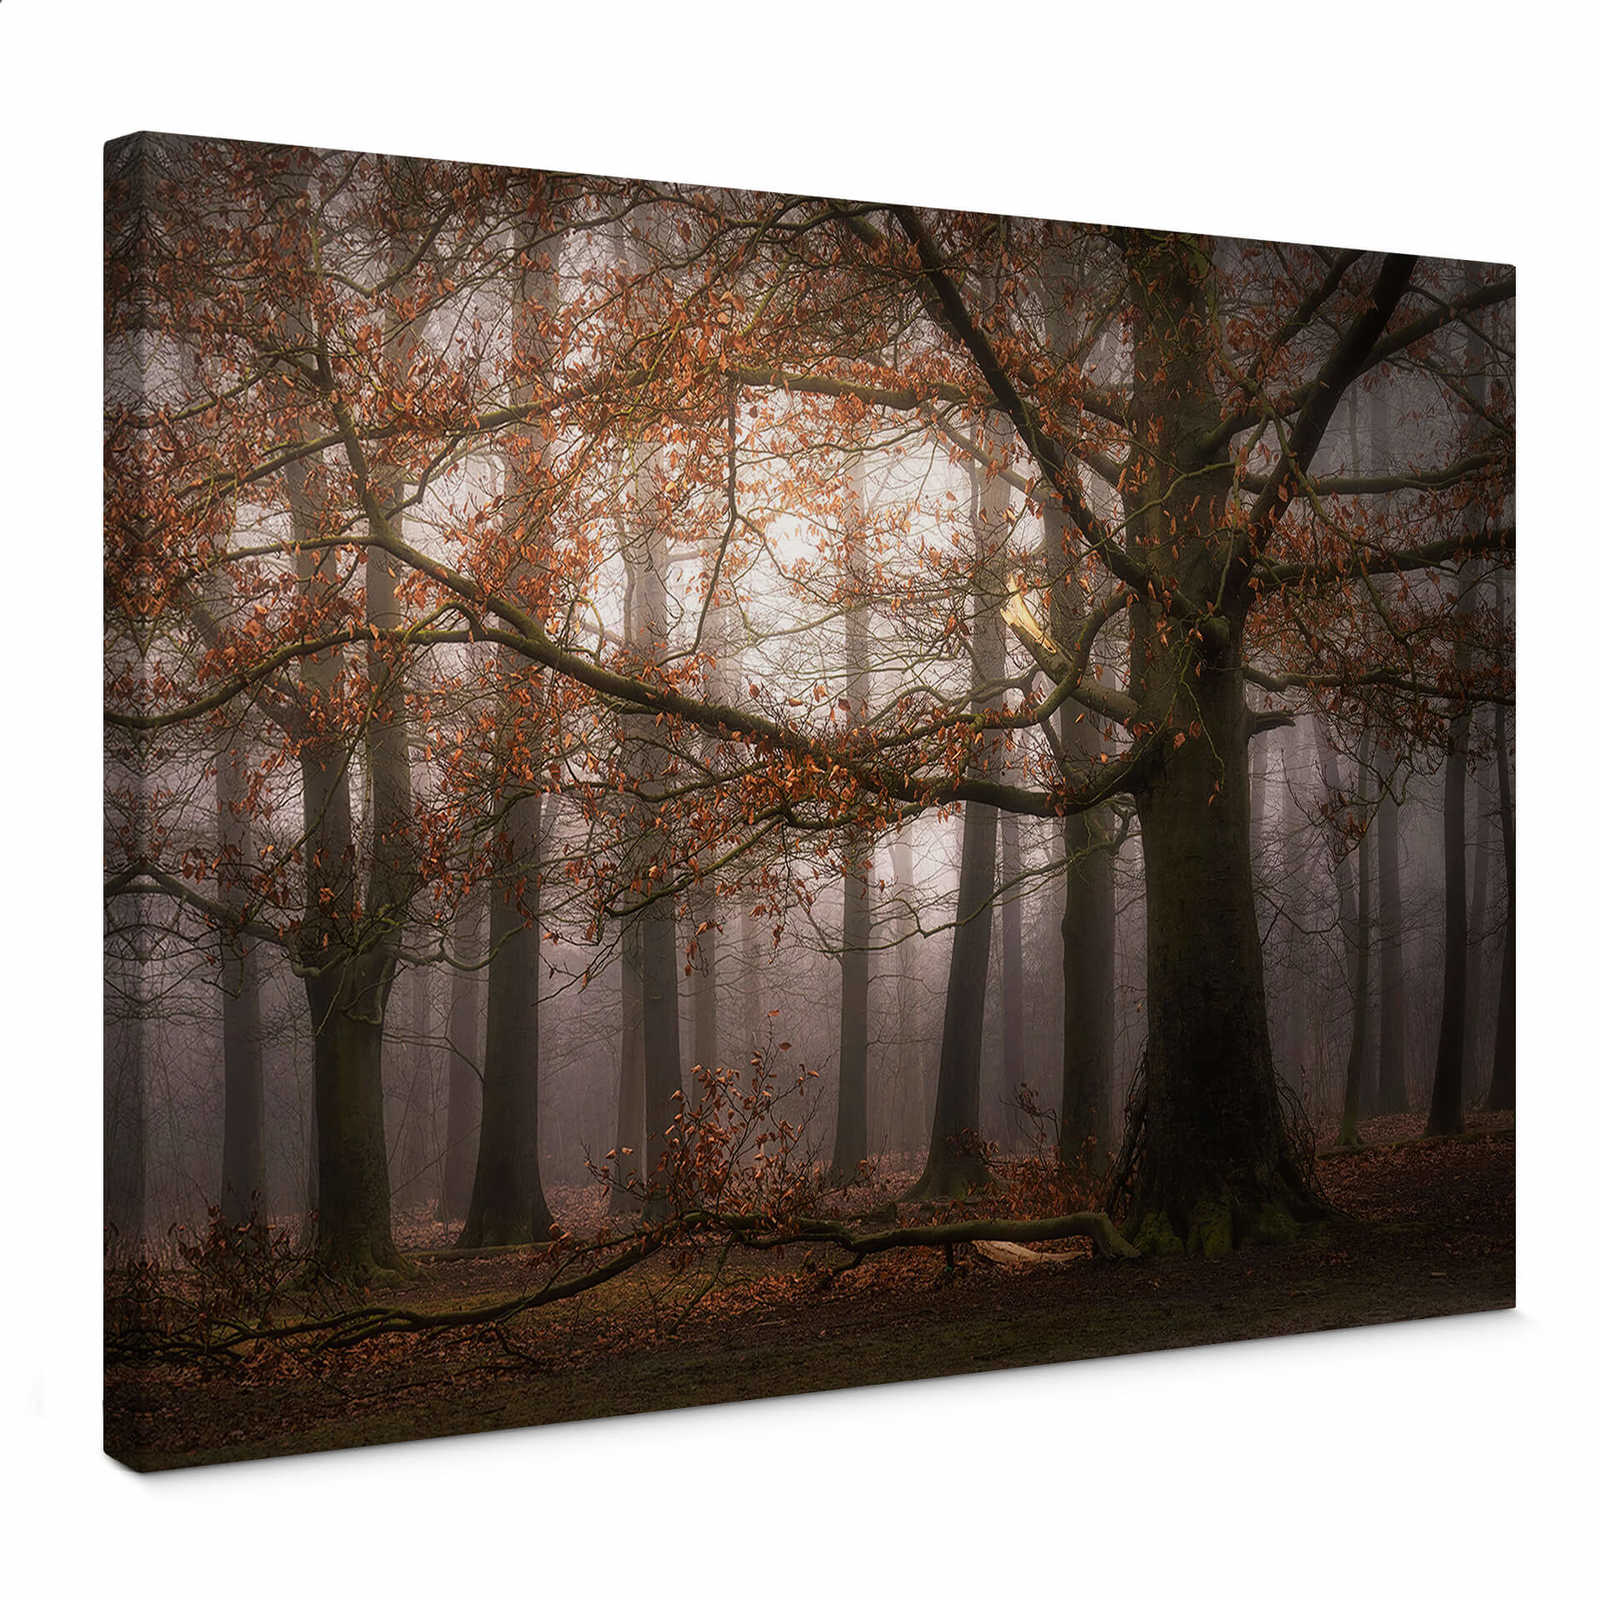 Leinwandbild mit Blätterwald im November von Digemans – 0,70 m x 0,50 m
